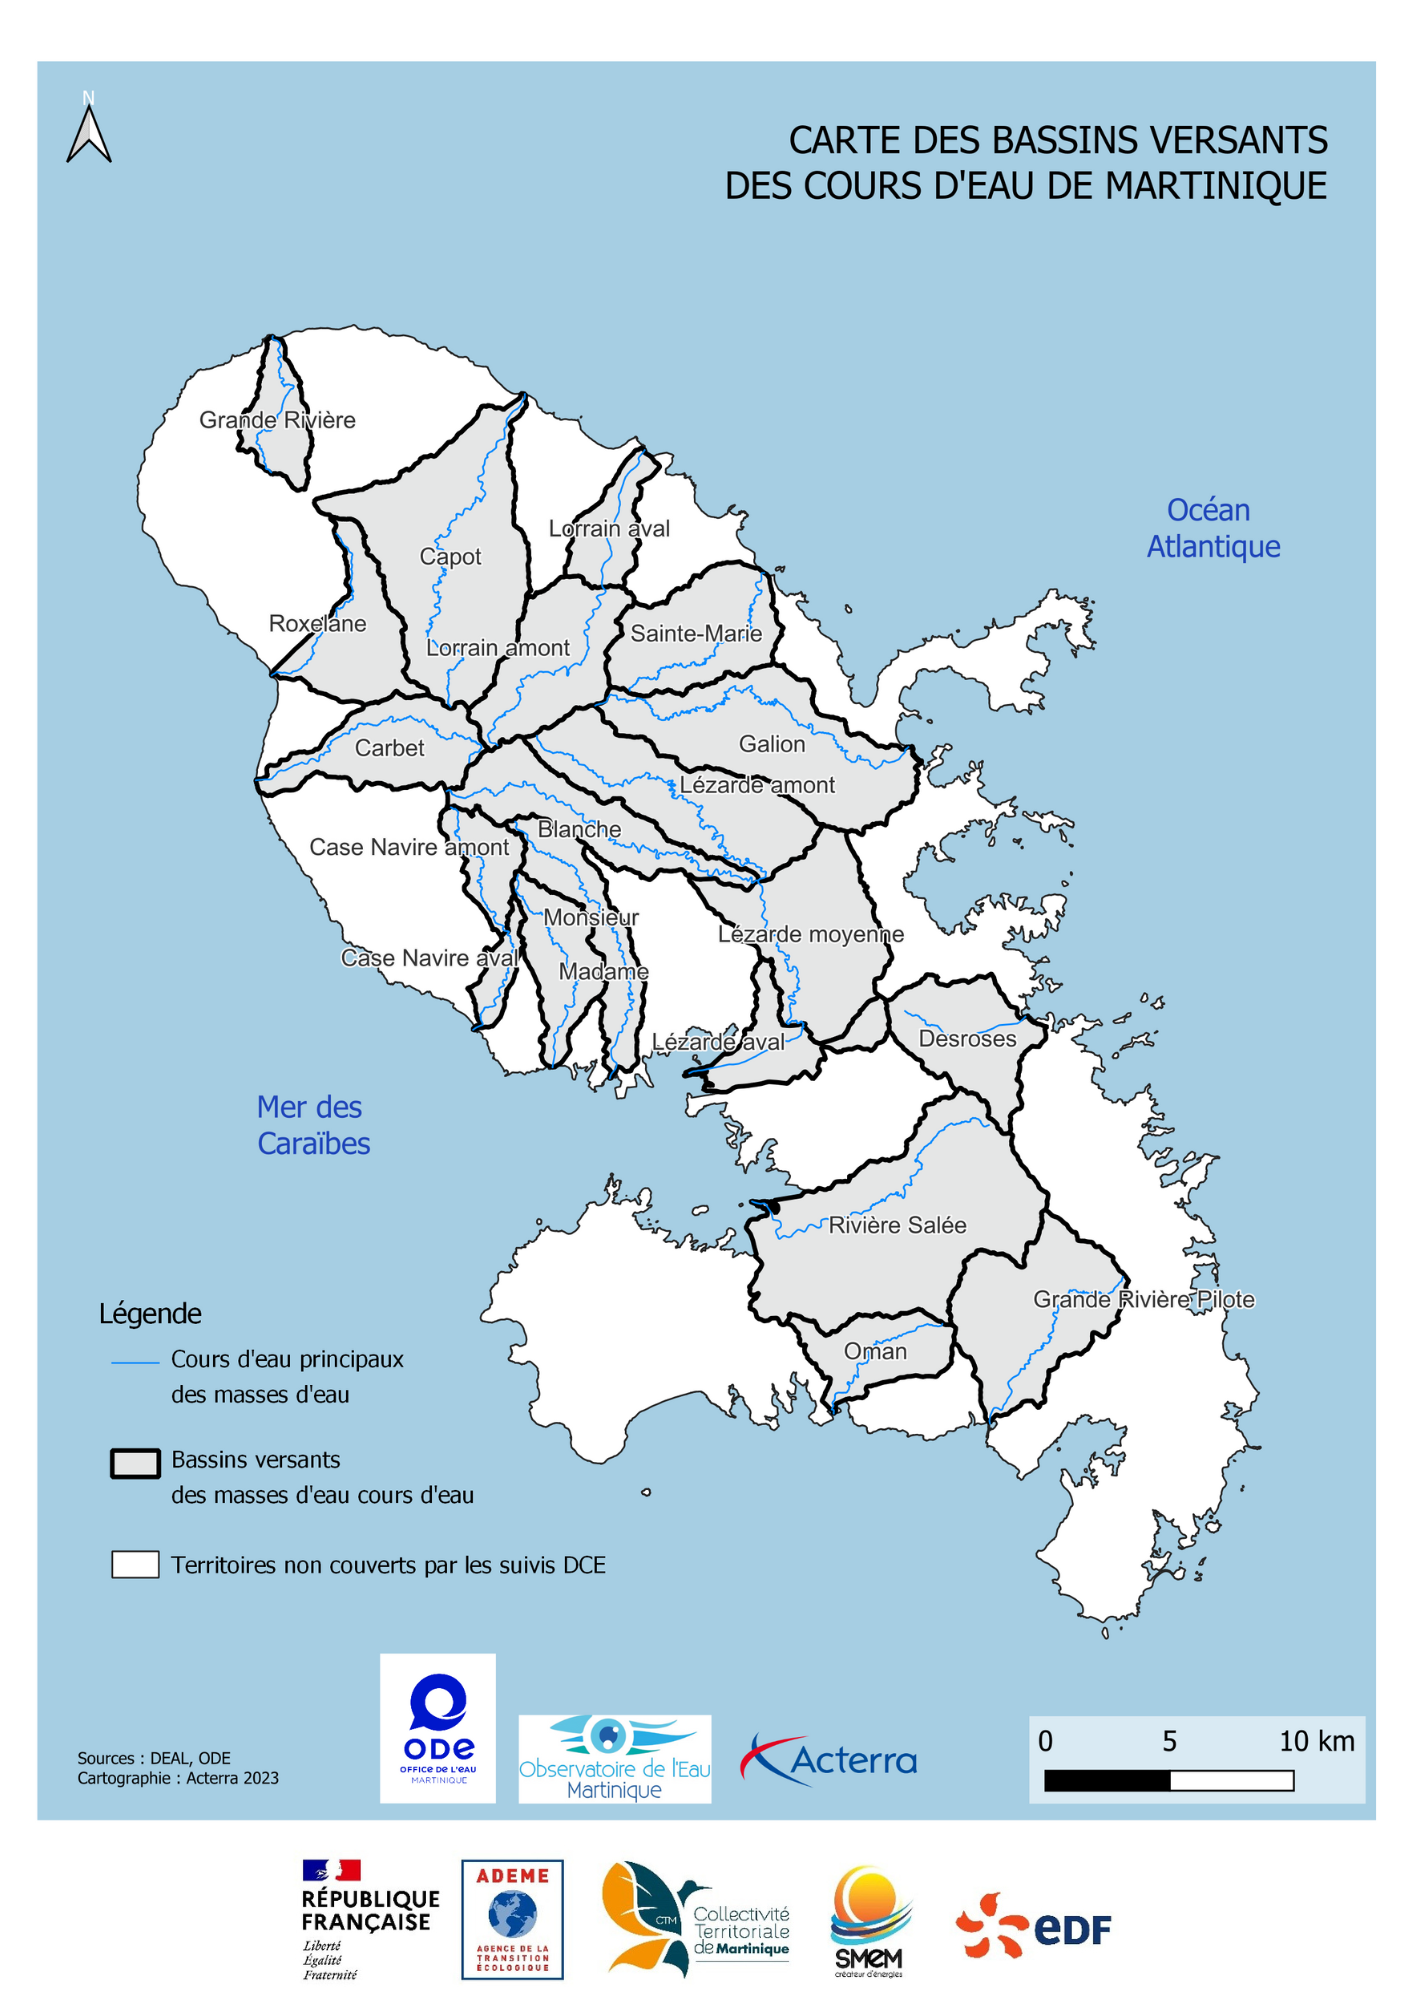 Carte des bassins versants des cours d'eau de Martinique